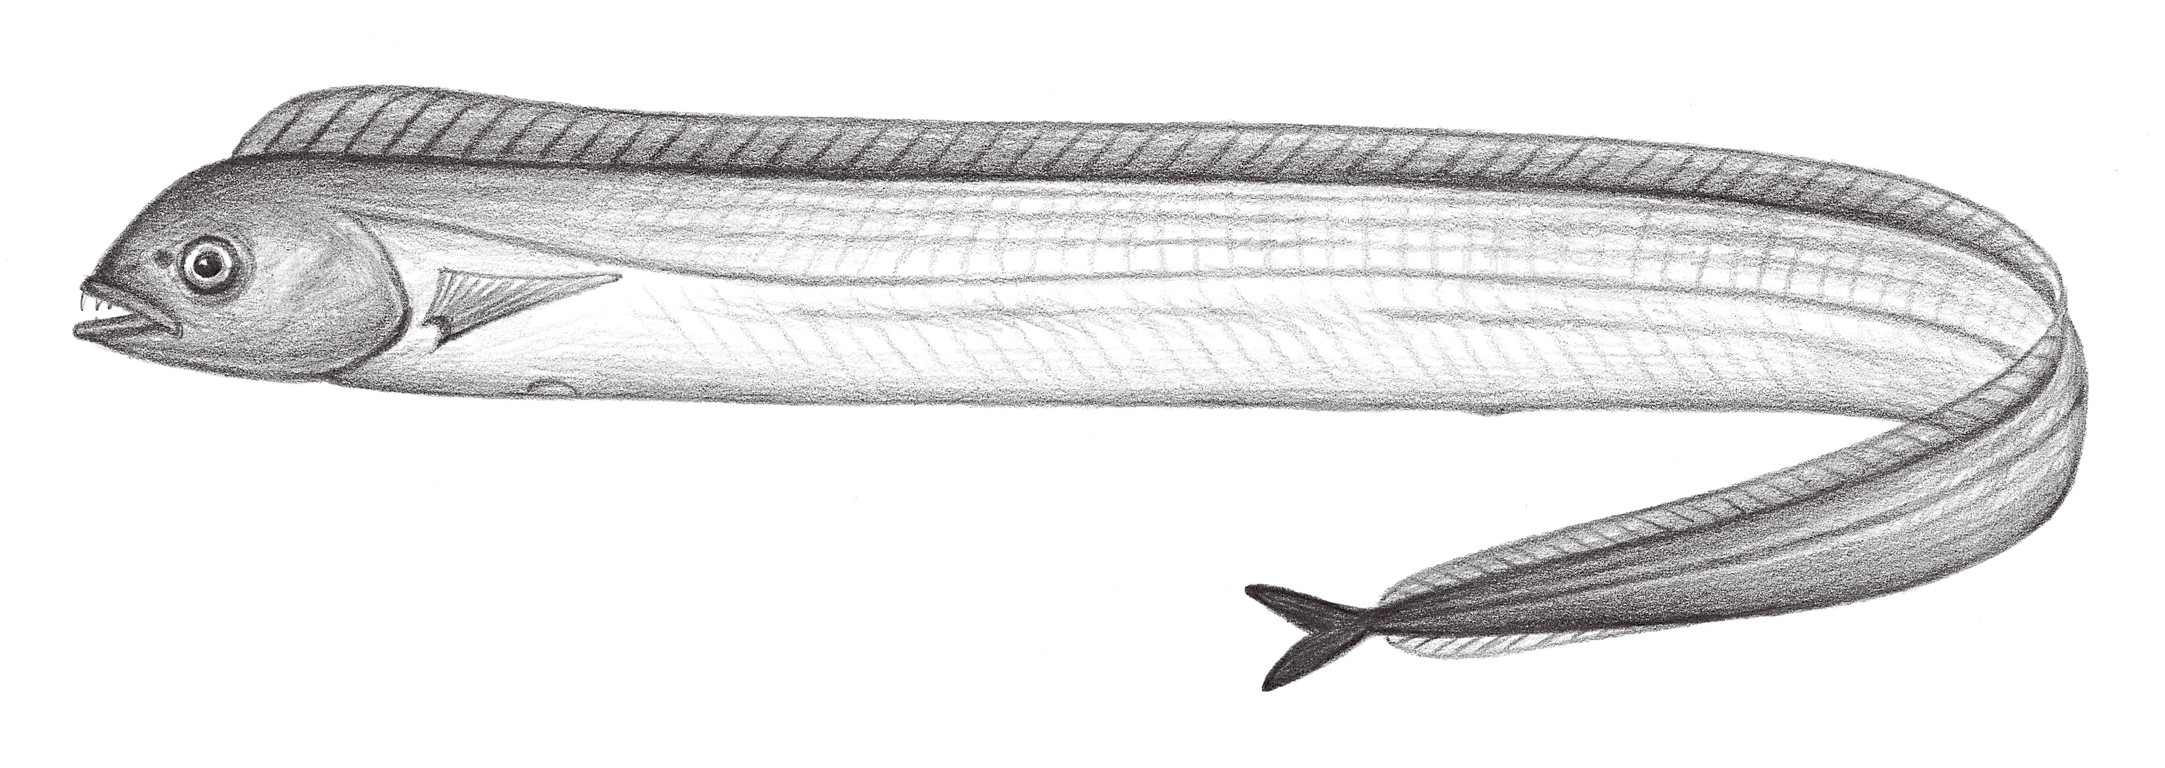 2336.	深海帶魚 Evoxymetopon taeniatus Poey, 1863